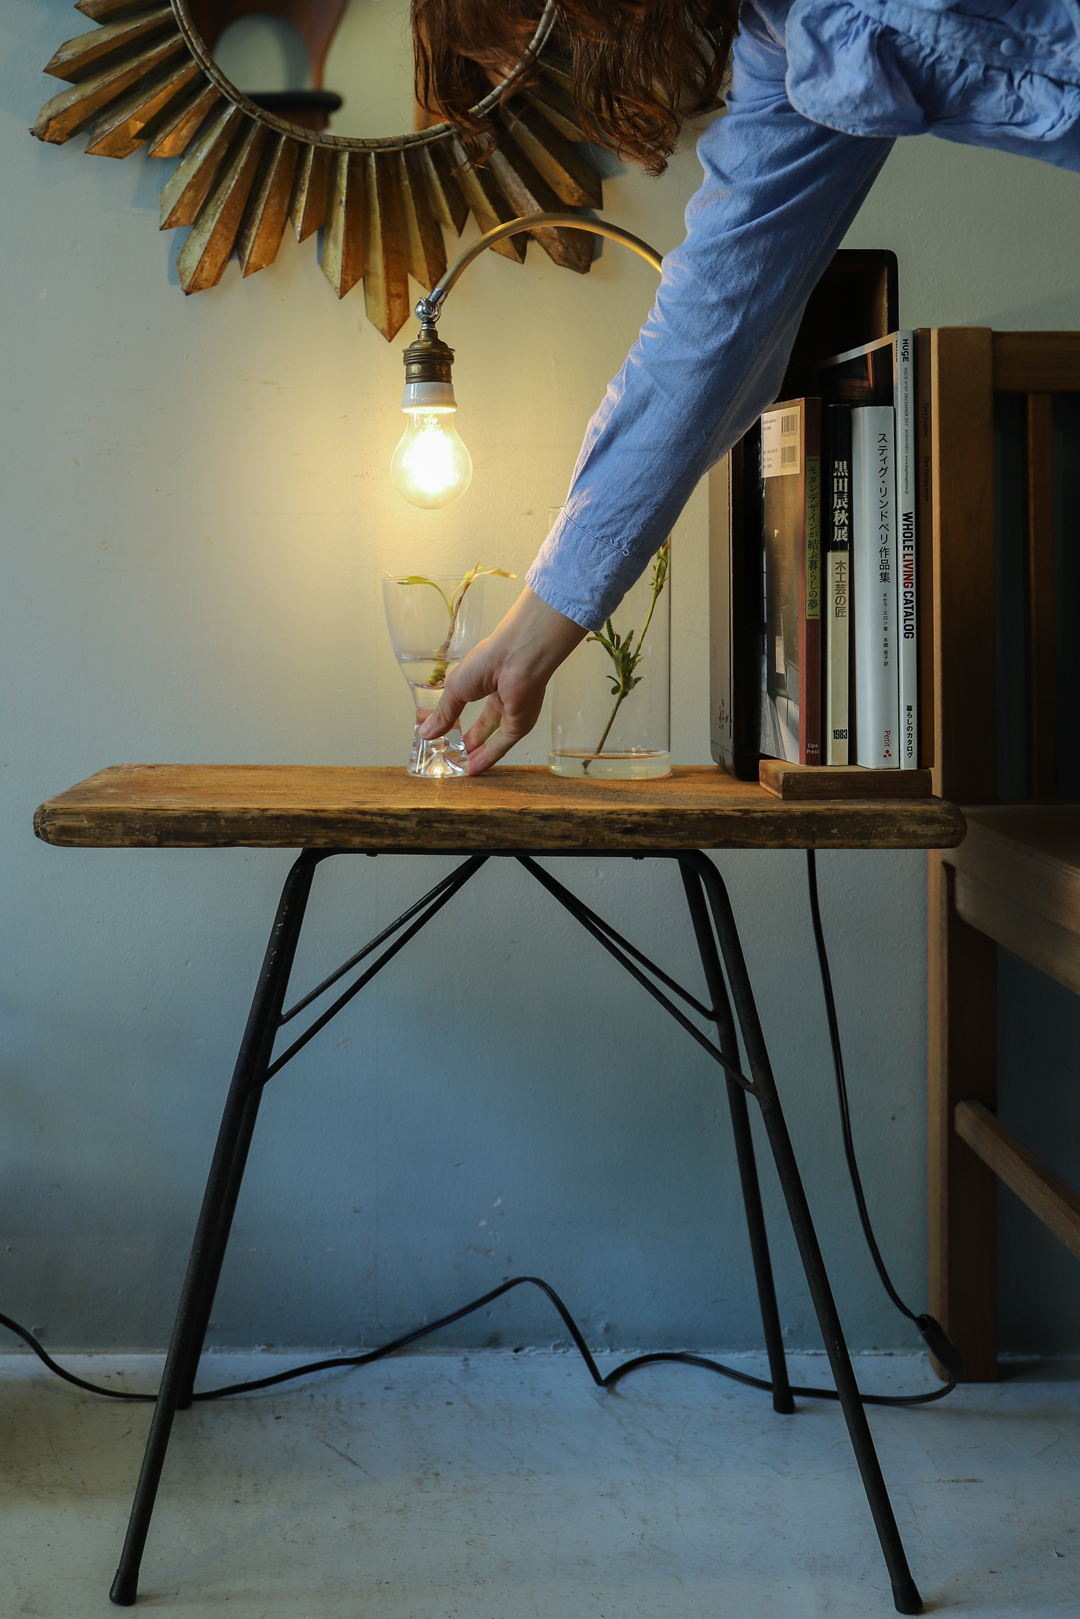 Antique Console Table with Lamp/アンティーク コンソールテーブル ランプ マガジンラック 間接照明 シャビーシック